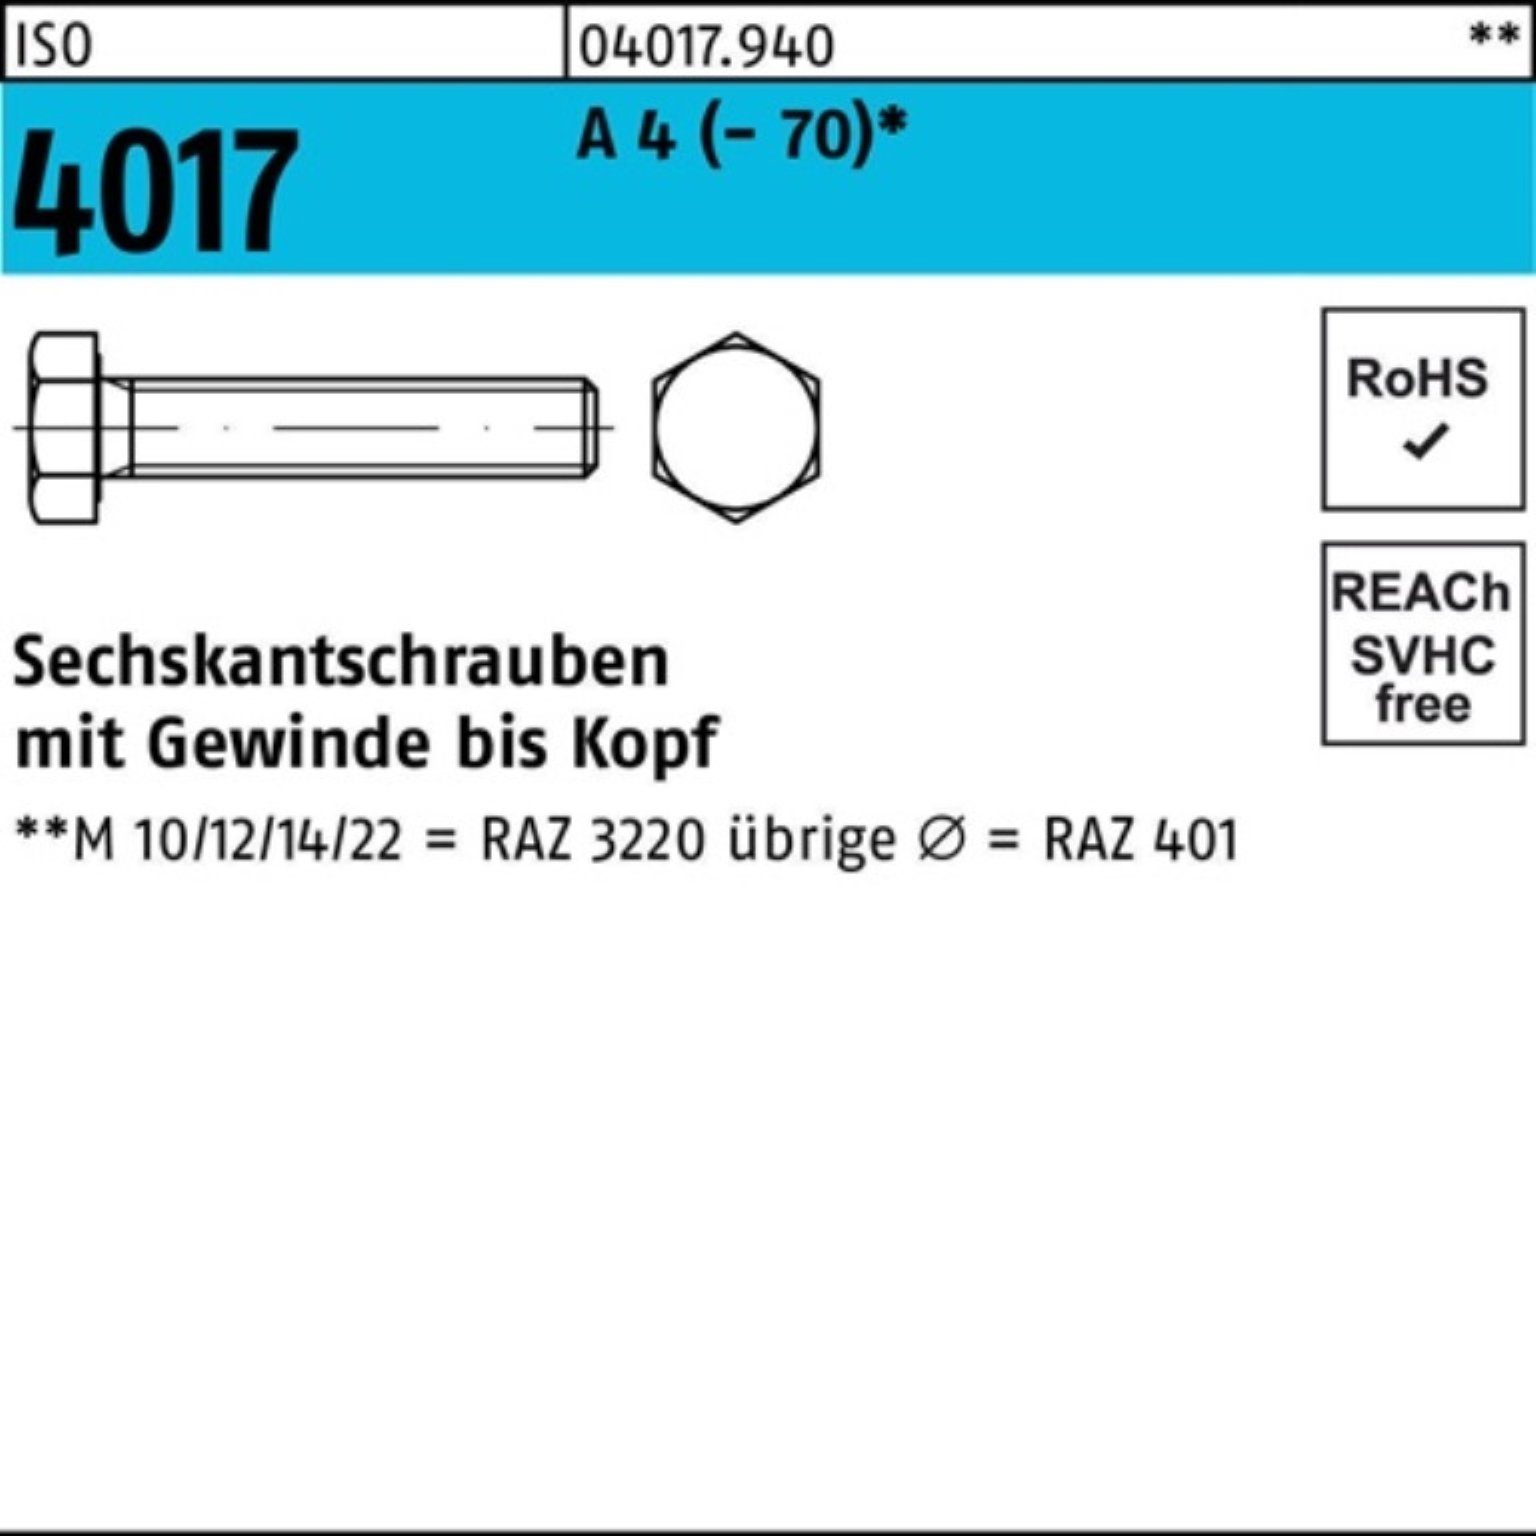 Bufab Sechskantschraube 100er Pack Sechskantschraube ISO 4017 VG M8x 65 A 4 (70) 50 Stück I